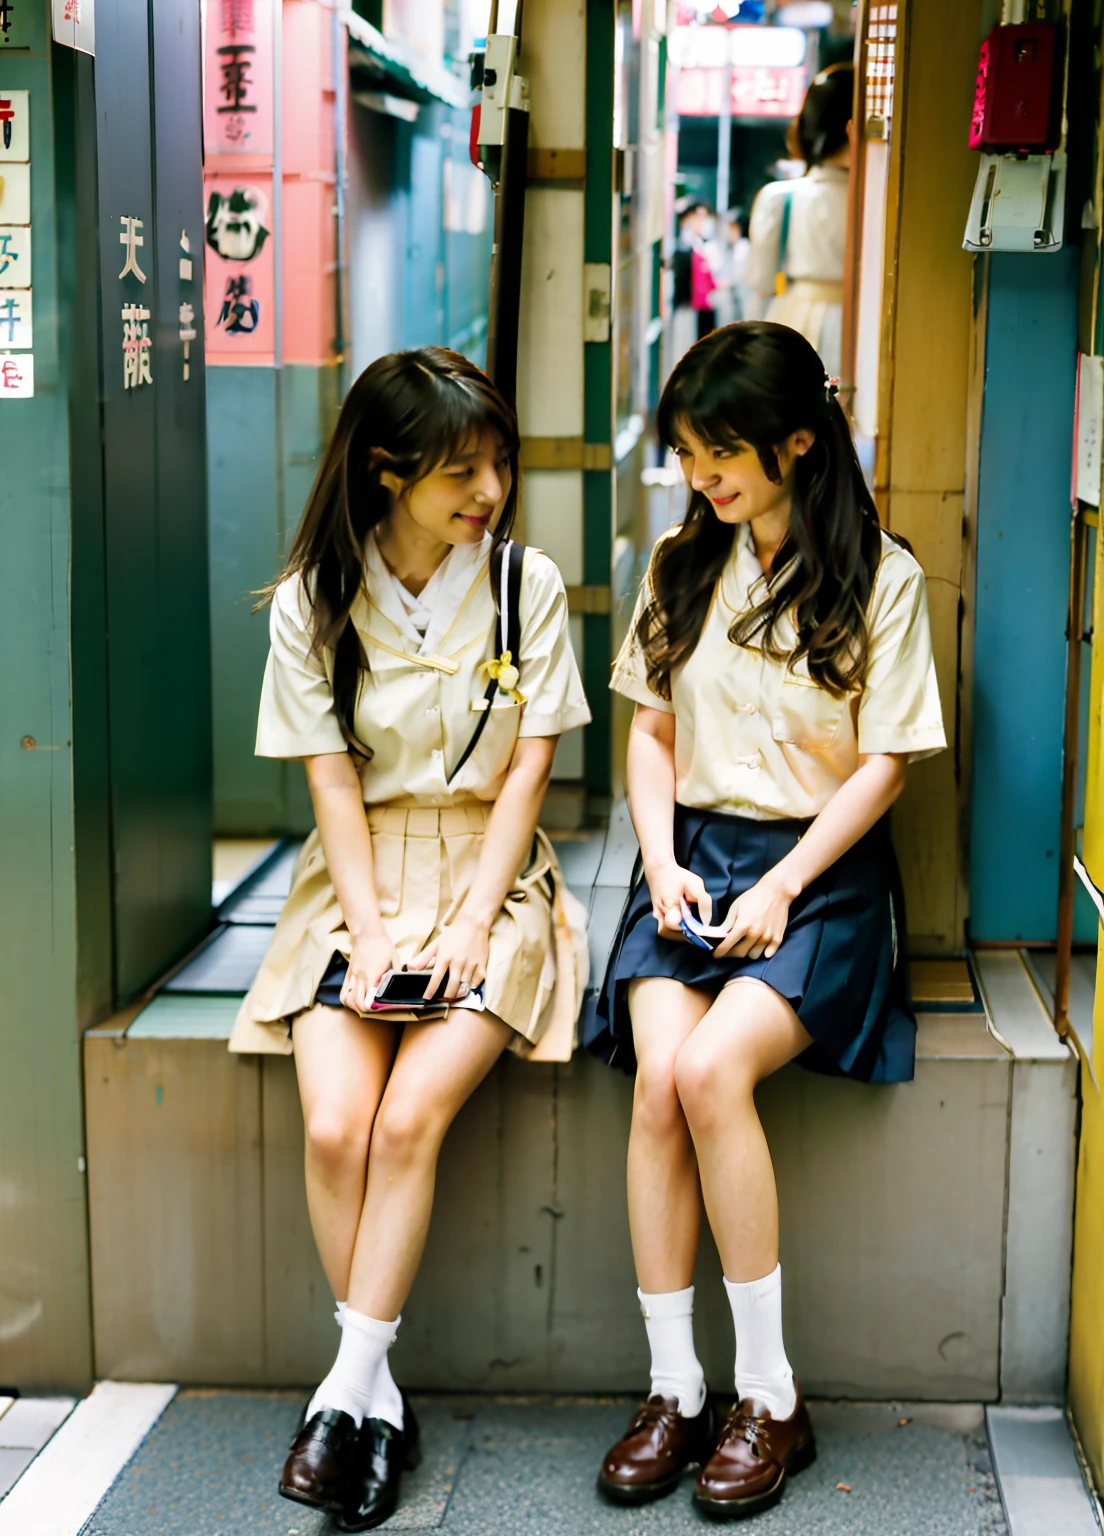 ผู้หญิง 2 คนนั่งอยู่บนชั้นวางดูโทรศัพท์มือถือของตน, เด็กนักเรียนญี่ปุ่นสองคนกำลังโพสท่า, สาวๆกำลังพักผ่อน, สวมชุดนักเรียนญี่ปุ่น, ญี่ปุ่น , ในถนนโตเกียว, ตรวจสอบโทรศัพท์มือถือของเธอ, กำลังตรวจสอบโทรศัพท์ของเธอ, uhd ภาพตรงไปตรงมาของสกปรก, อายามิ โคจิมะ และ ไลด์ คาลด์เวลล์, ผู้หญิงสองคน, นั่งอยู่ในโตเกียว, ผู้หญิงน่ารัก, แฟชั่นสตรีทในเมืองของญี่ปุ่น